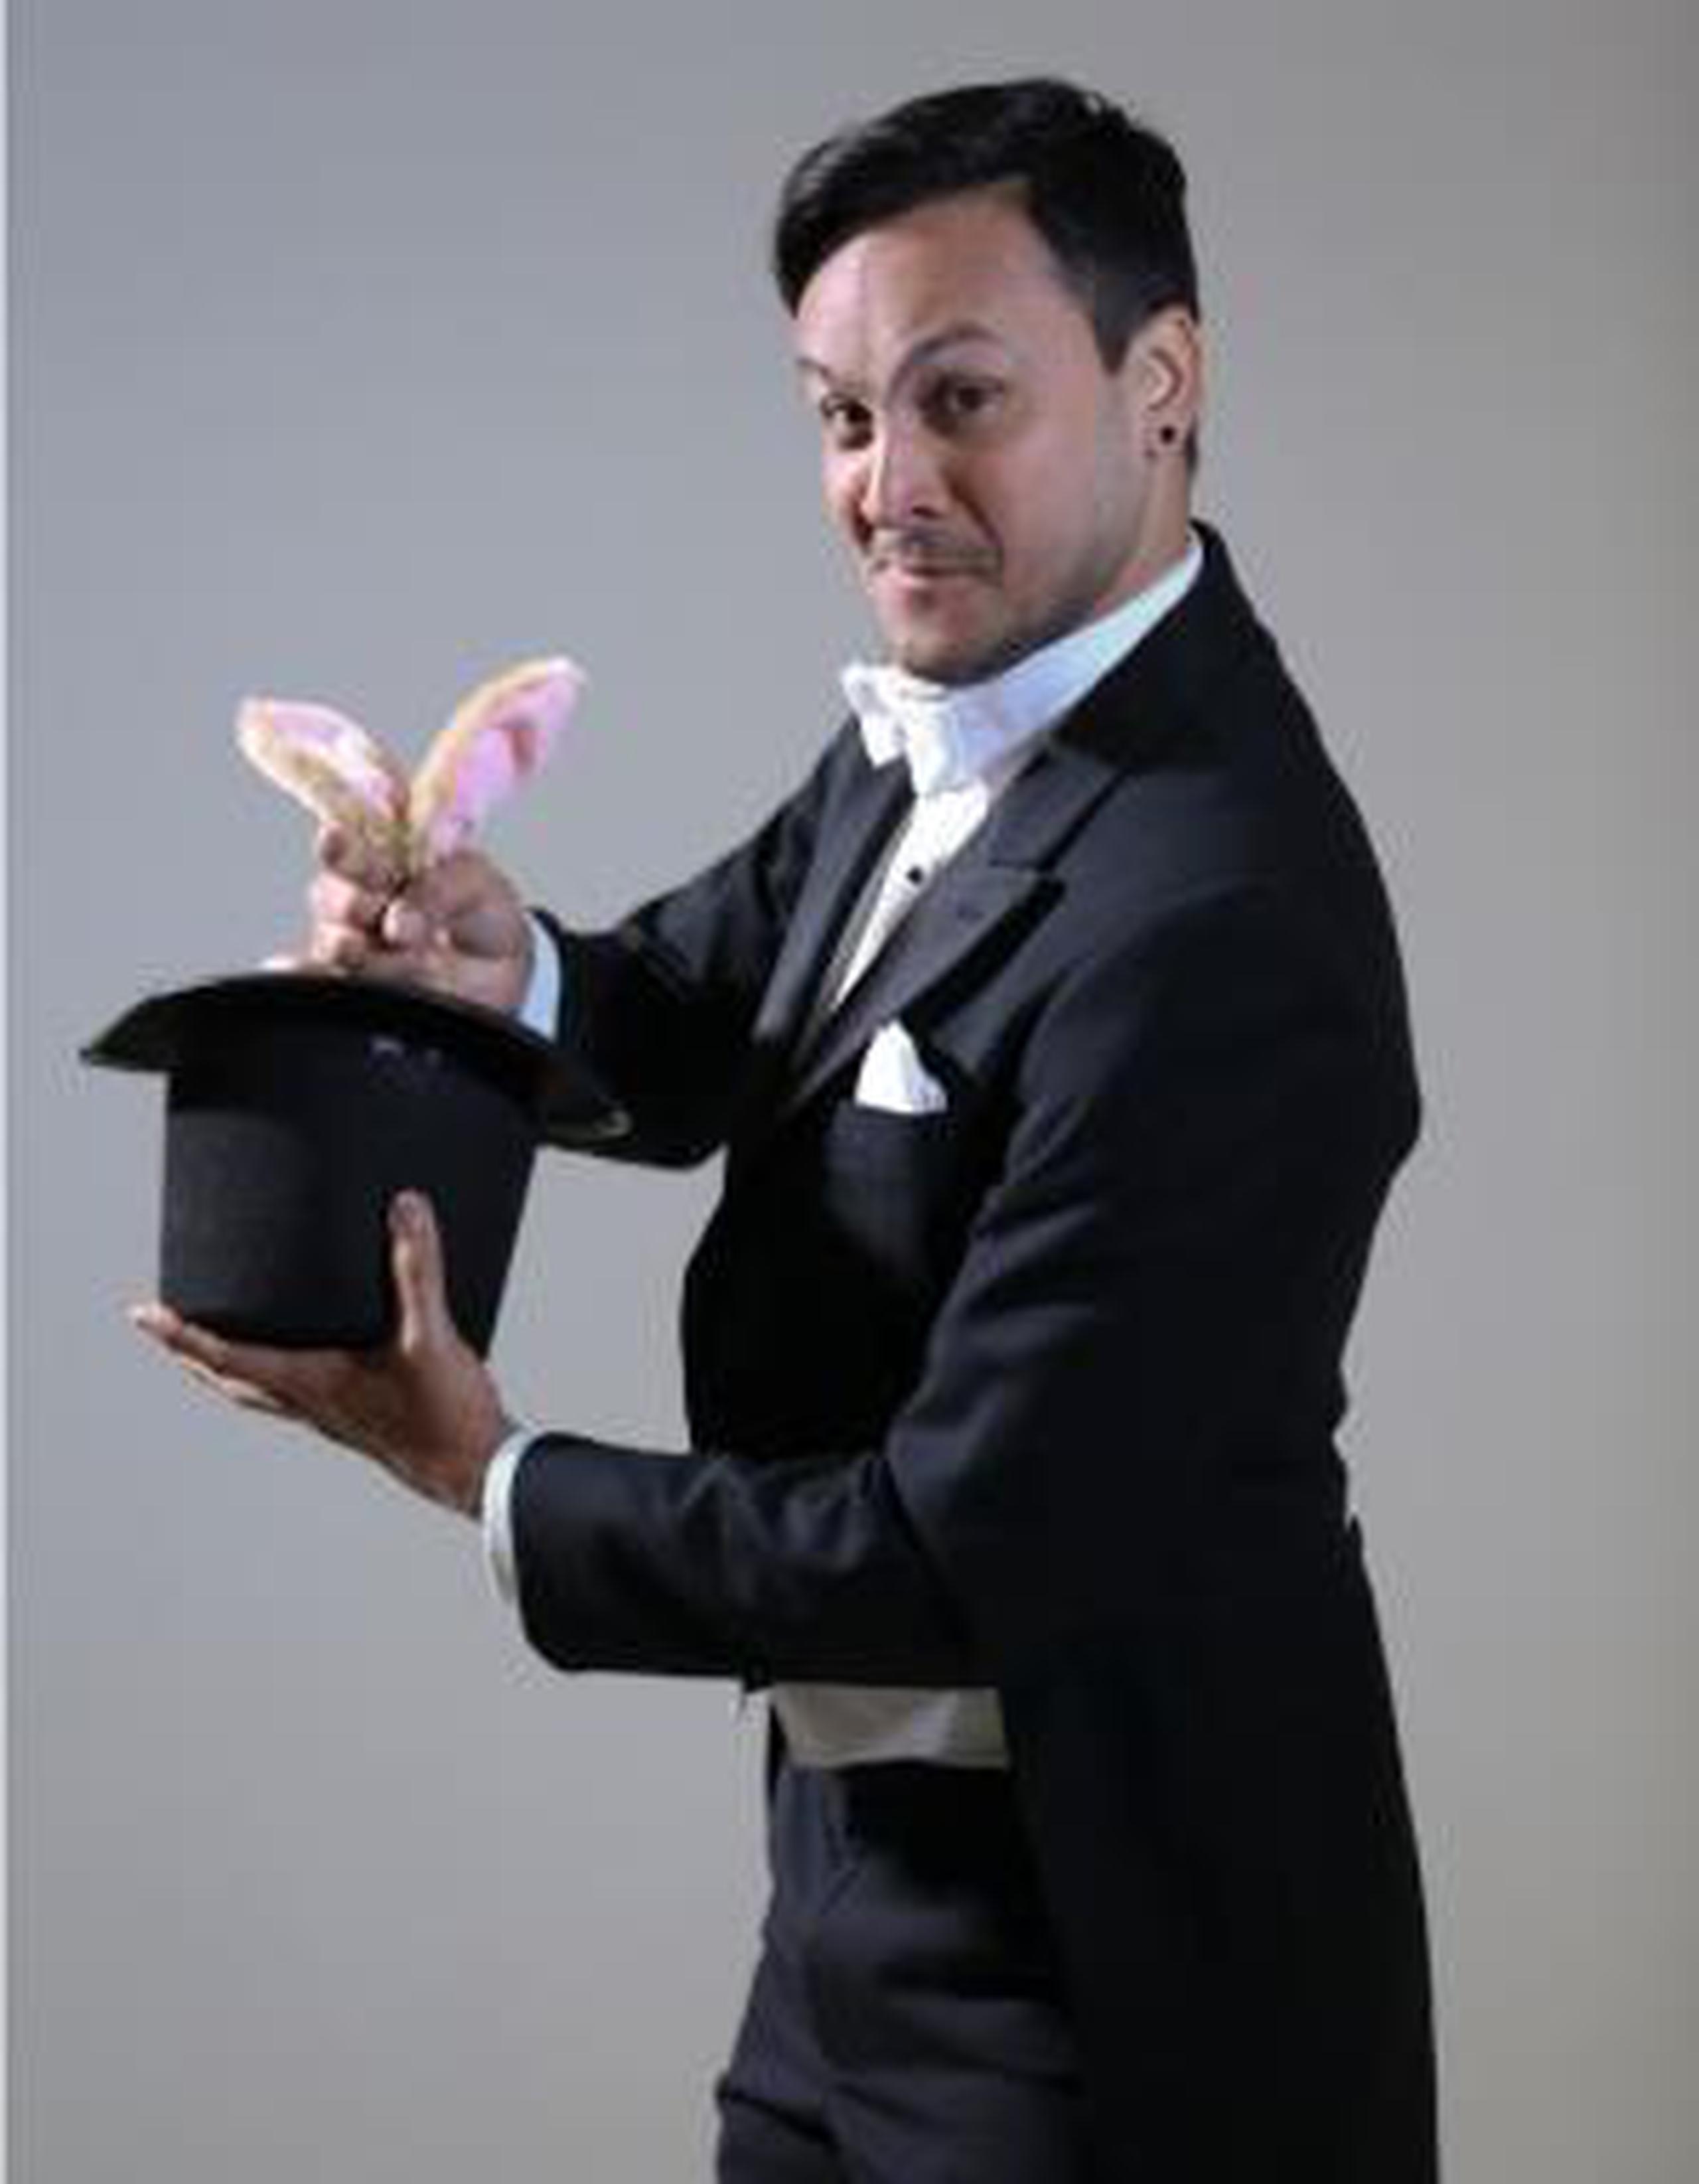 El comediante acepta que le molestan los comentarios que hace Bad Bunny hacia su esposa. (teresa.canino@gfrmedia.com)